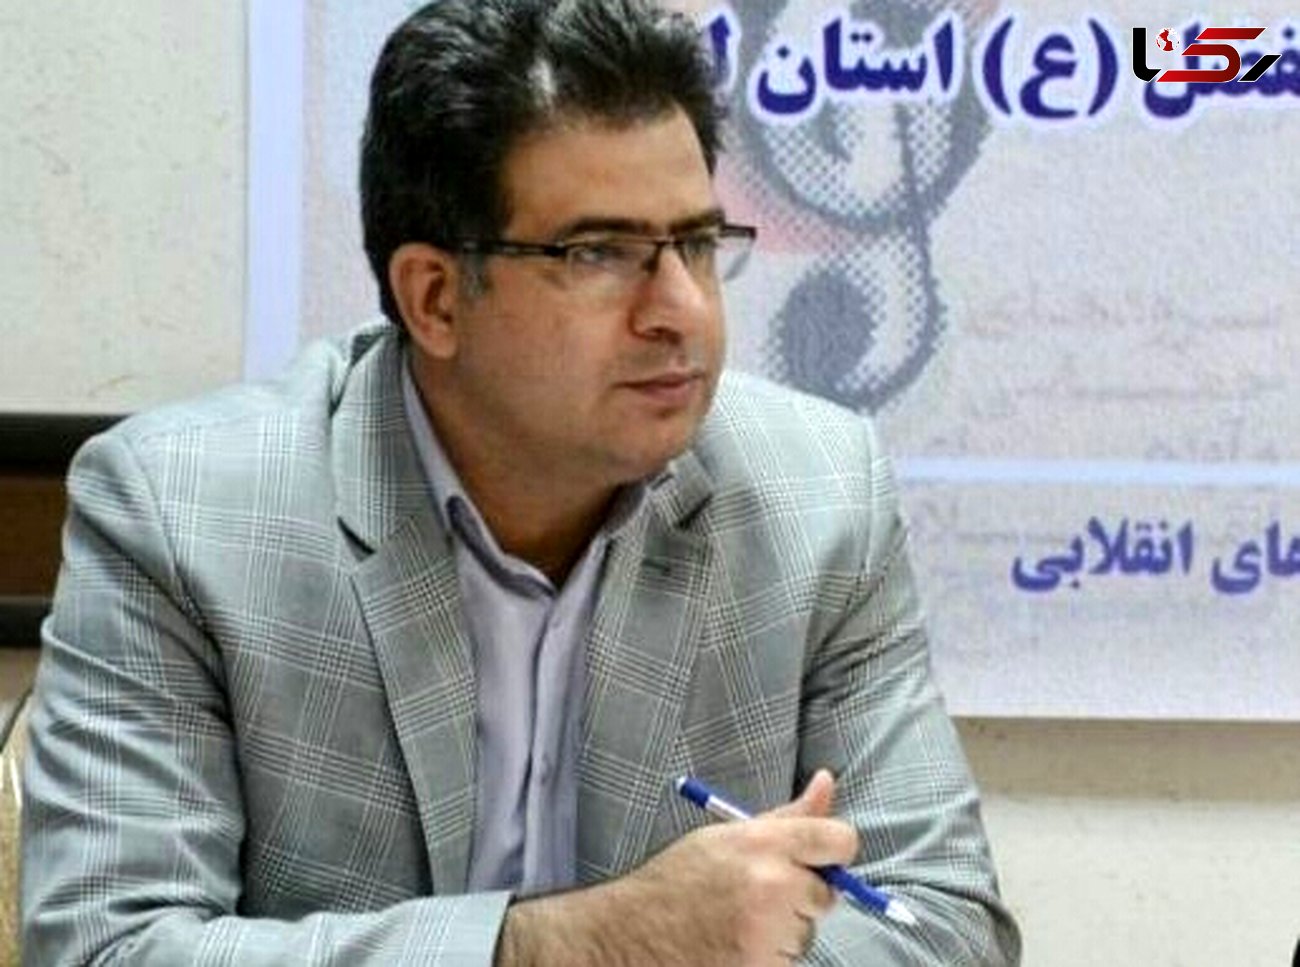 انتصاب رئیس شعبه بنیاد ایران شناسی لرستان